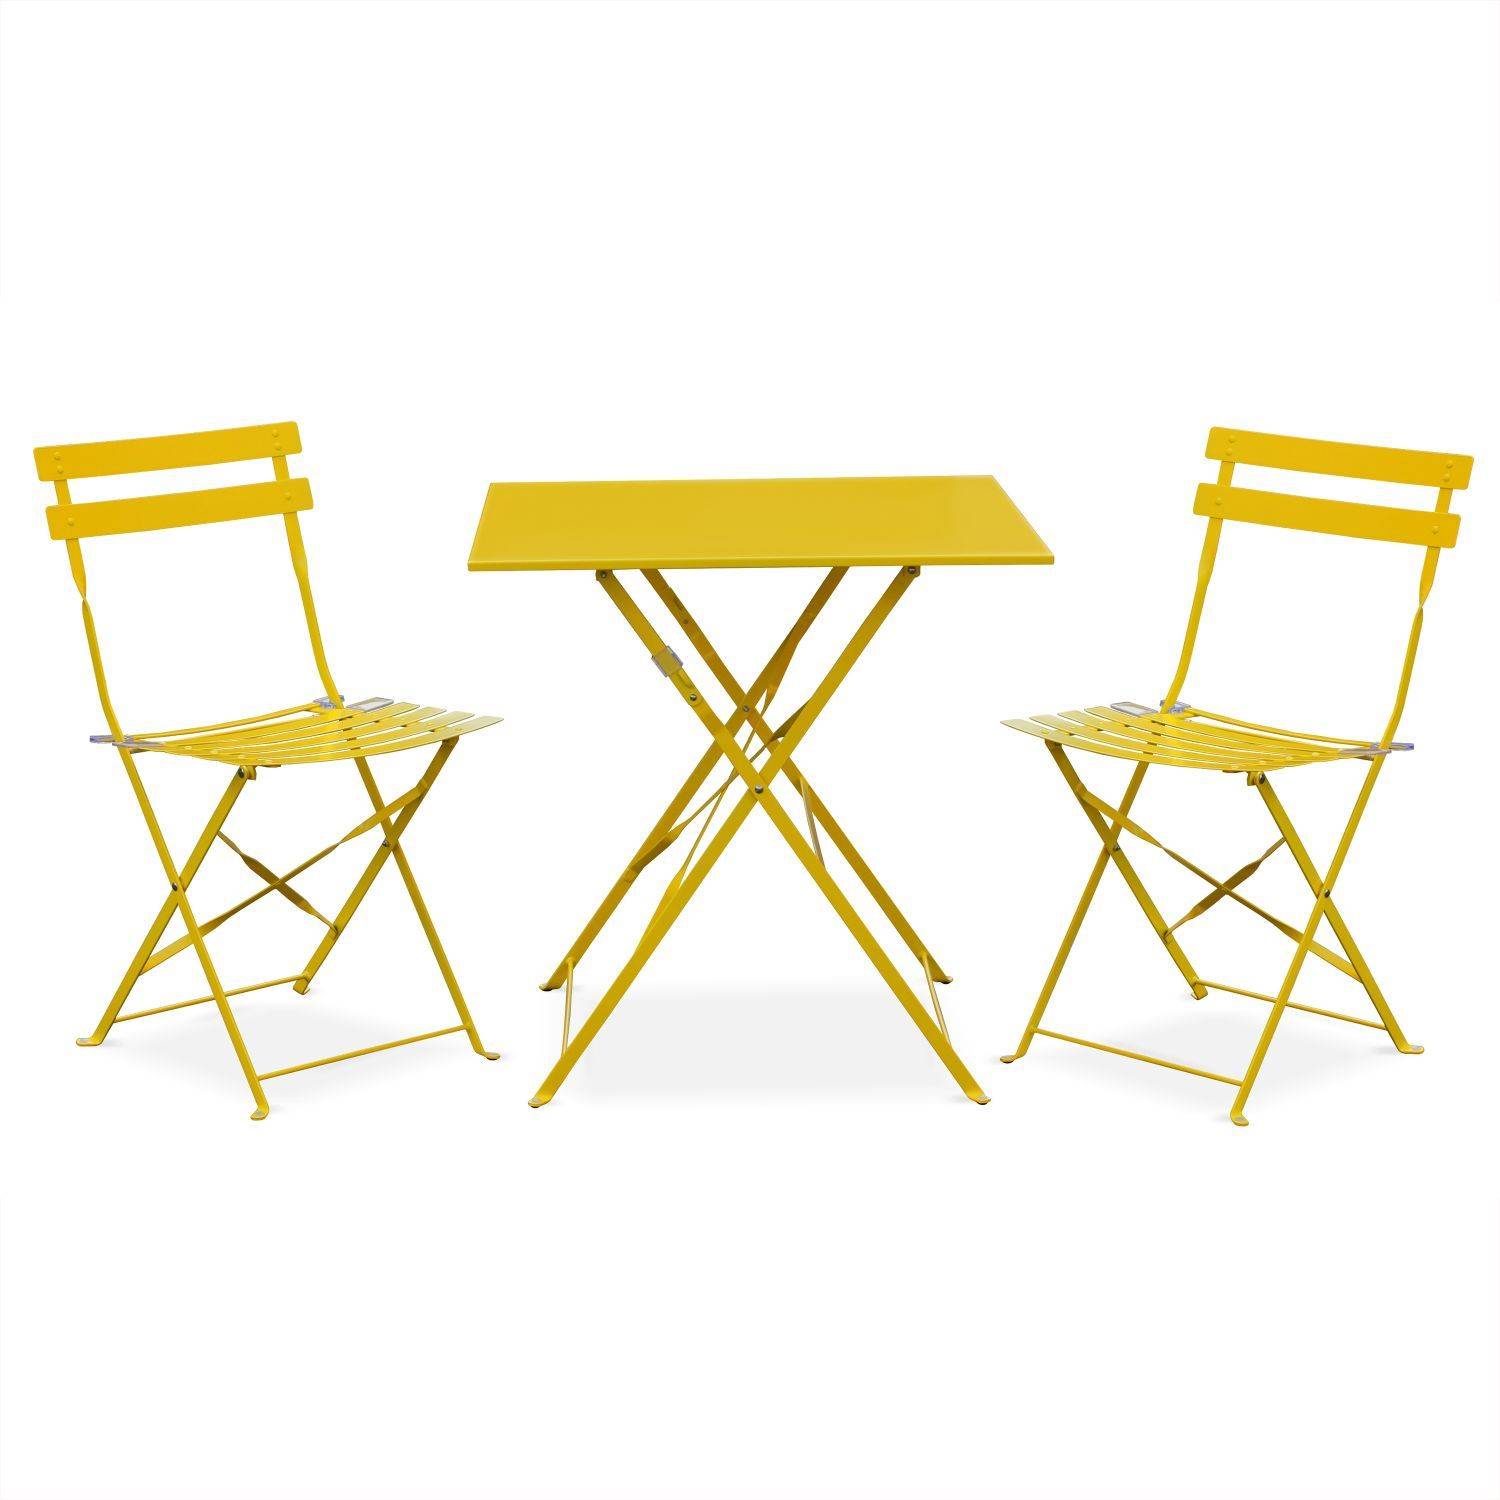 Klappbare Bistro-Gartenmöbel - Emilia quadratisch gelb - Tisch 70x70cm mit zwei Klappstühlen aus pulverbeschichtetem Stahl Photo2